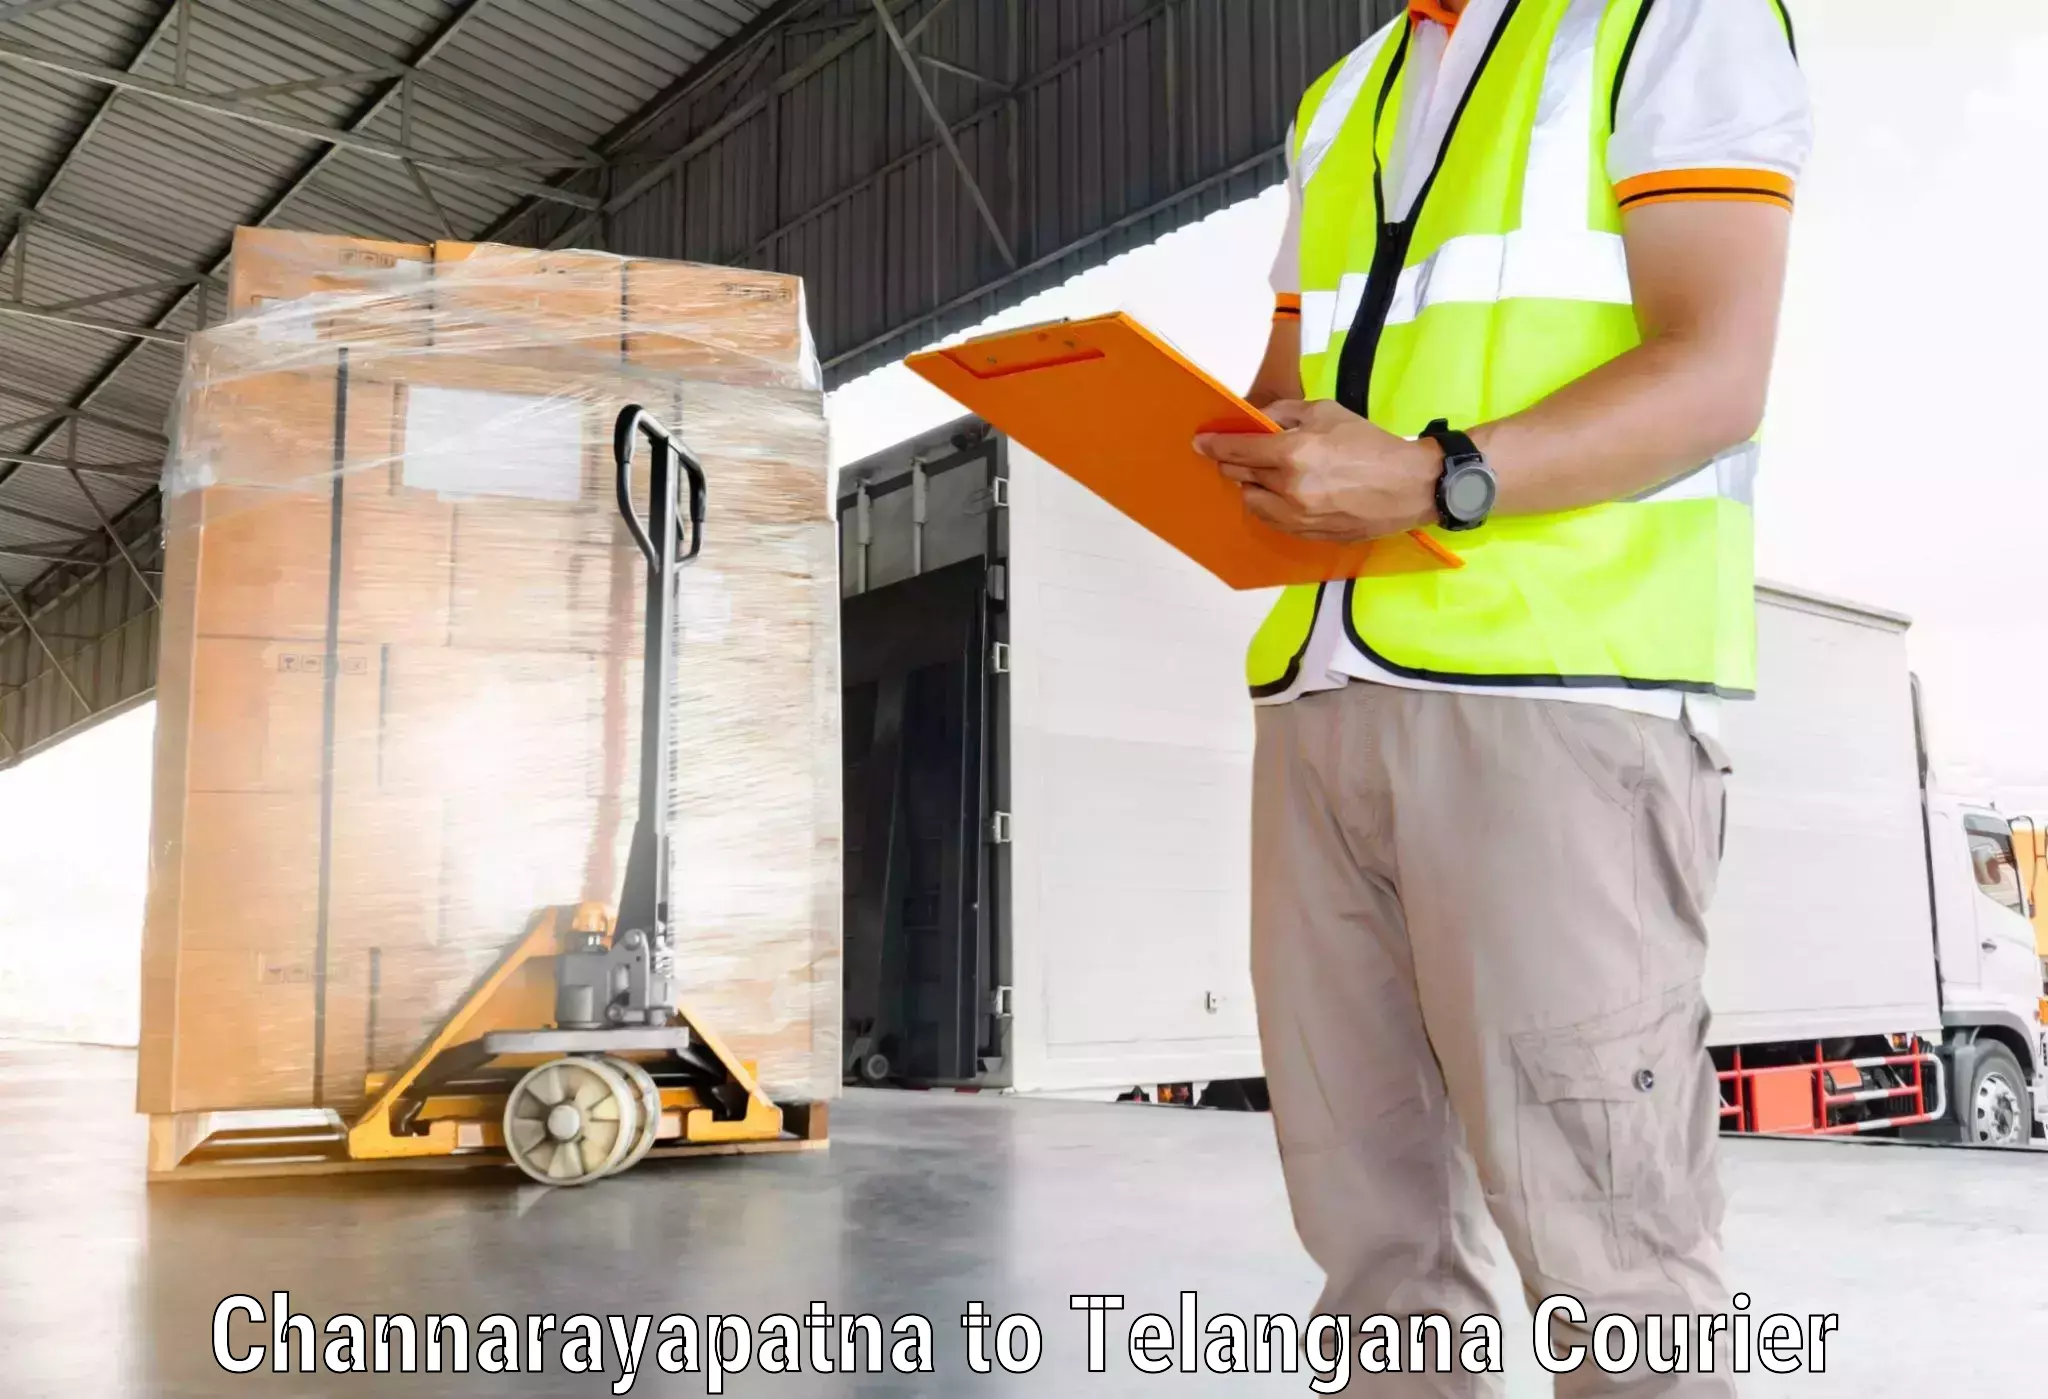 Courier service efficiency Channarayapatna to Narmetta